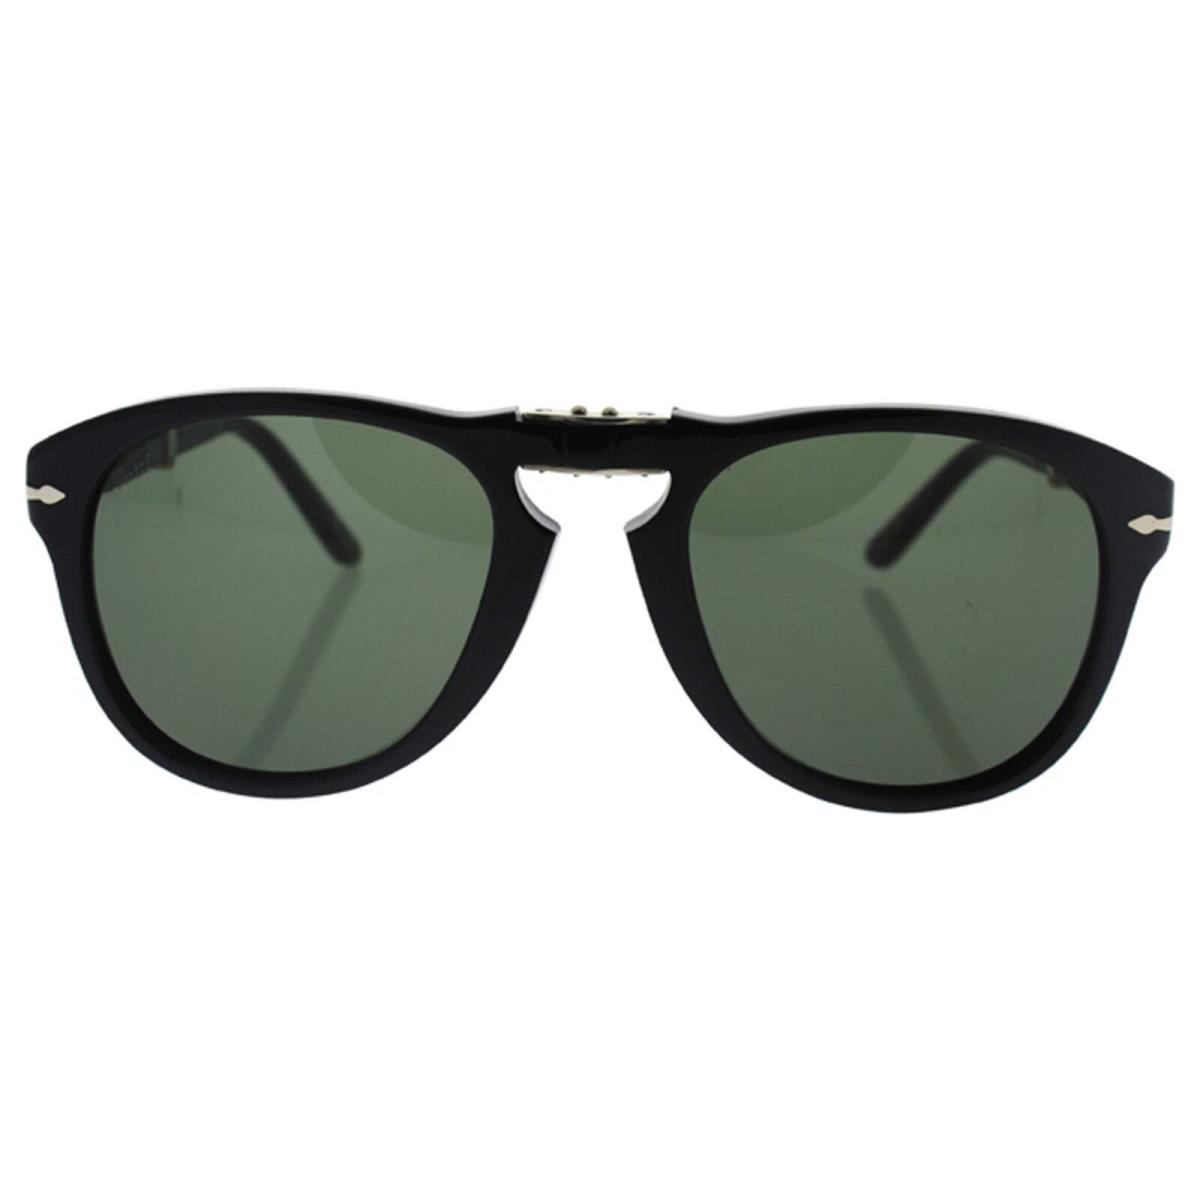 Persol PO714 95-31 - Black-grey 54-21-140 mm 54-21-140 mm Sunglasses